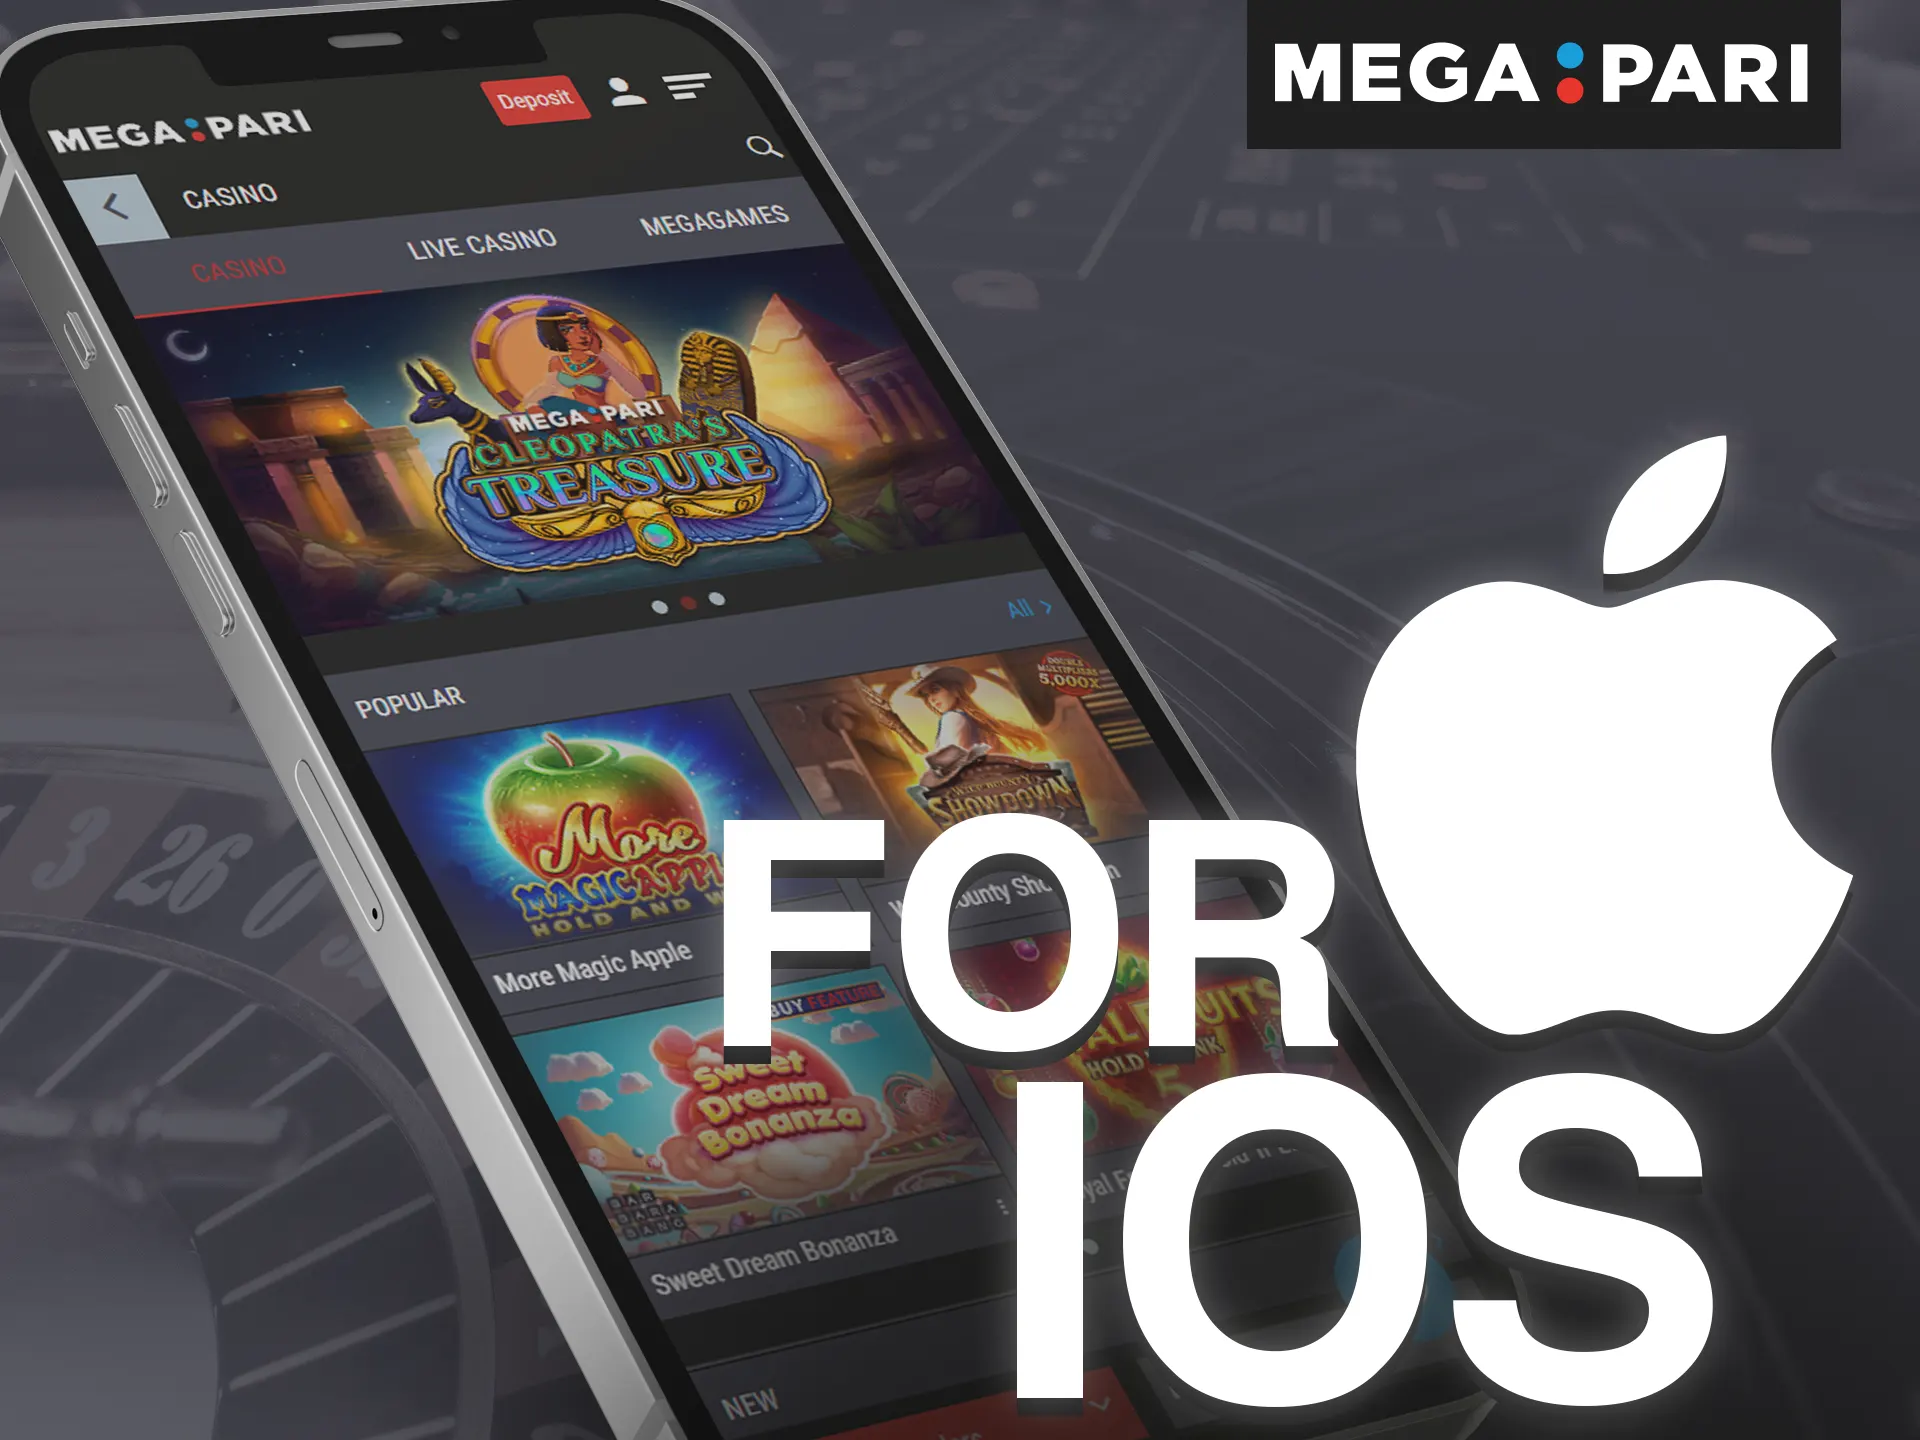 Install the Megapari app on your iOS device.